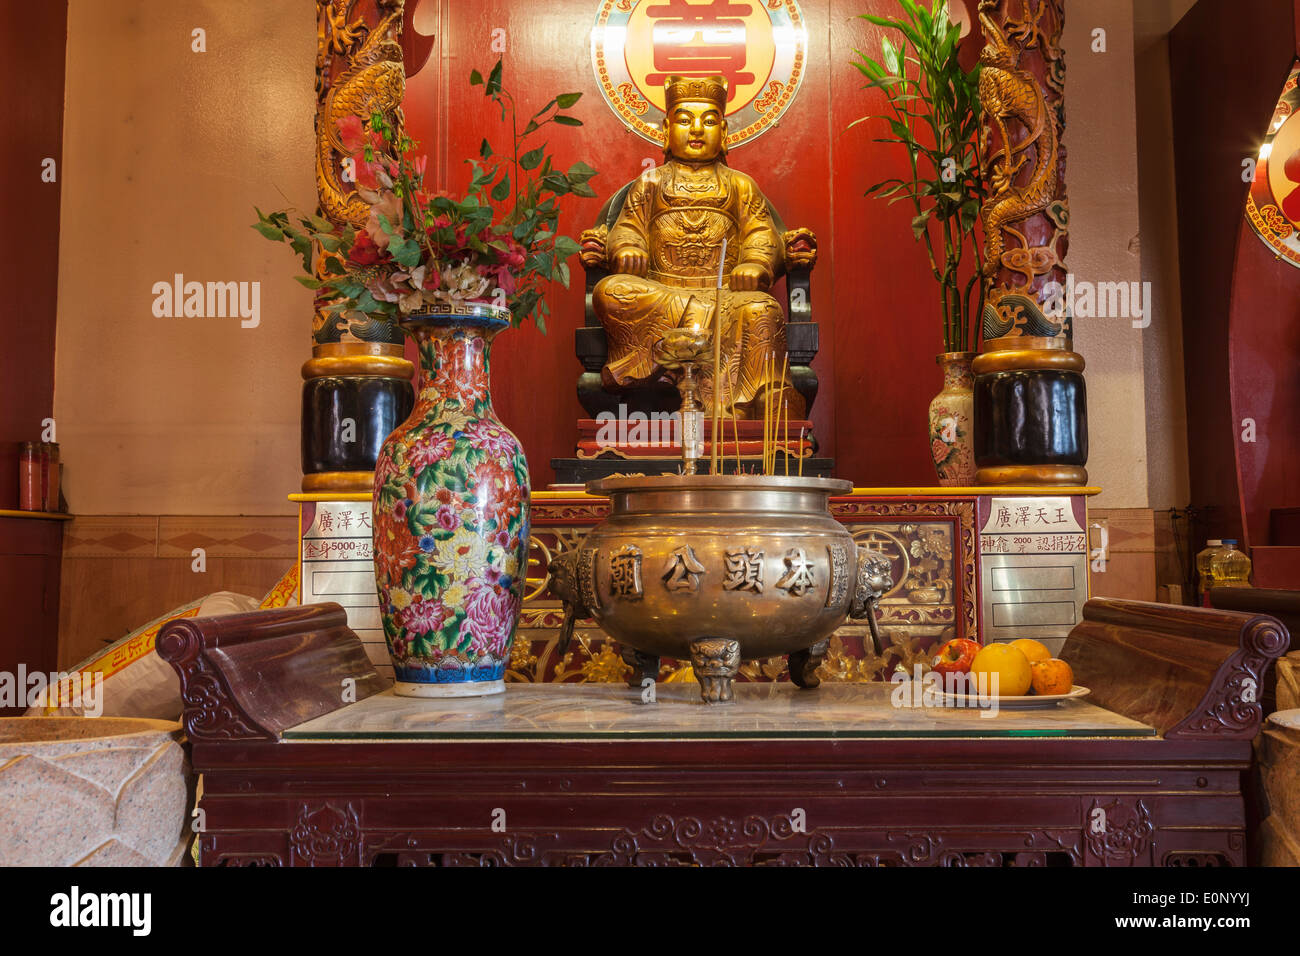 Temple Teo-Chew, Temple vietnamien et taoïste dans le sud-ouest de Houston, Texas. Banque D'Images